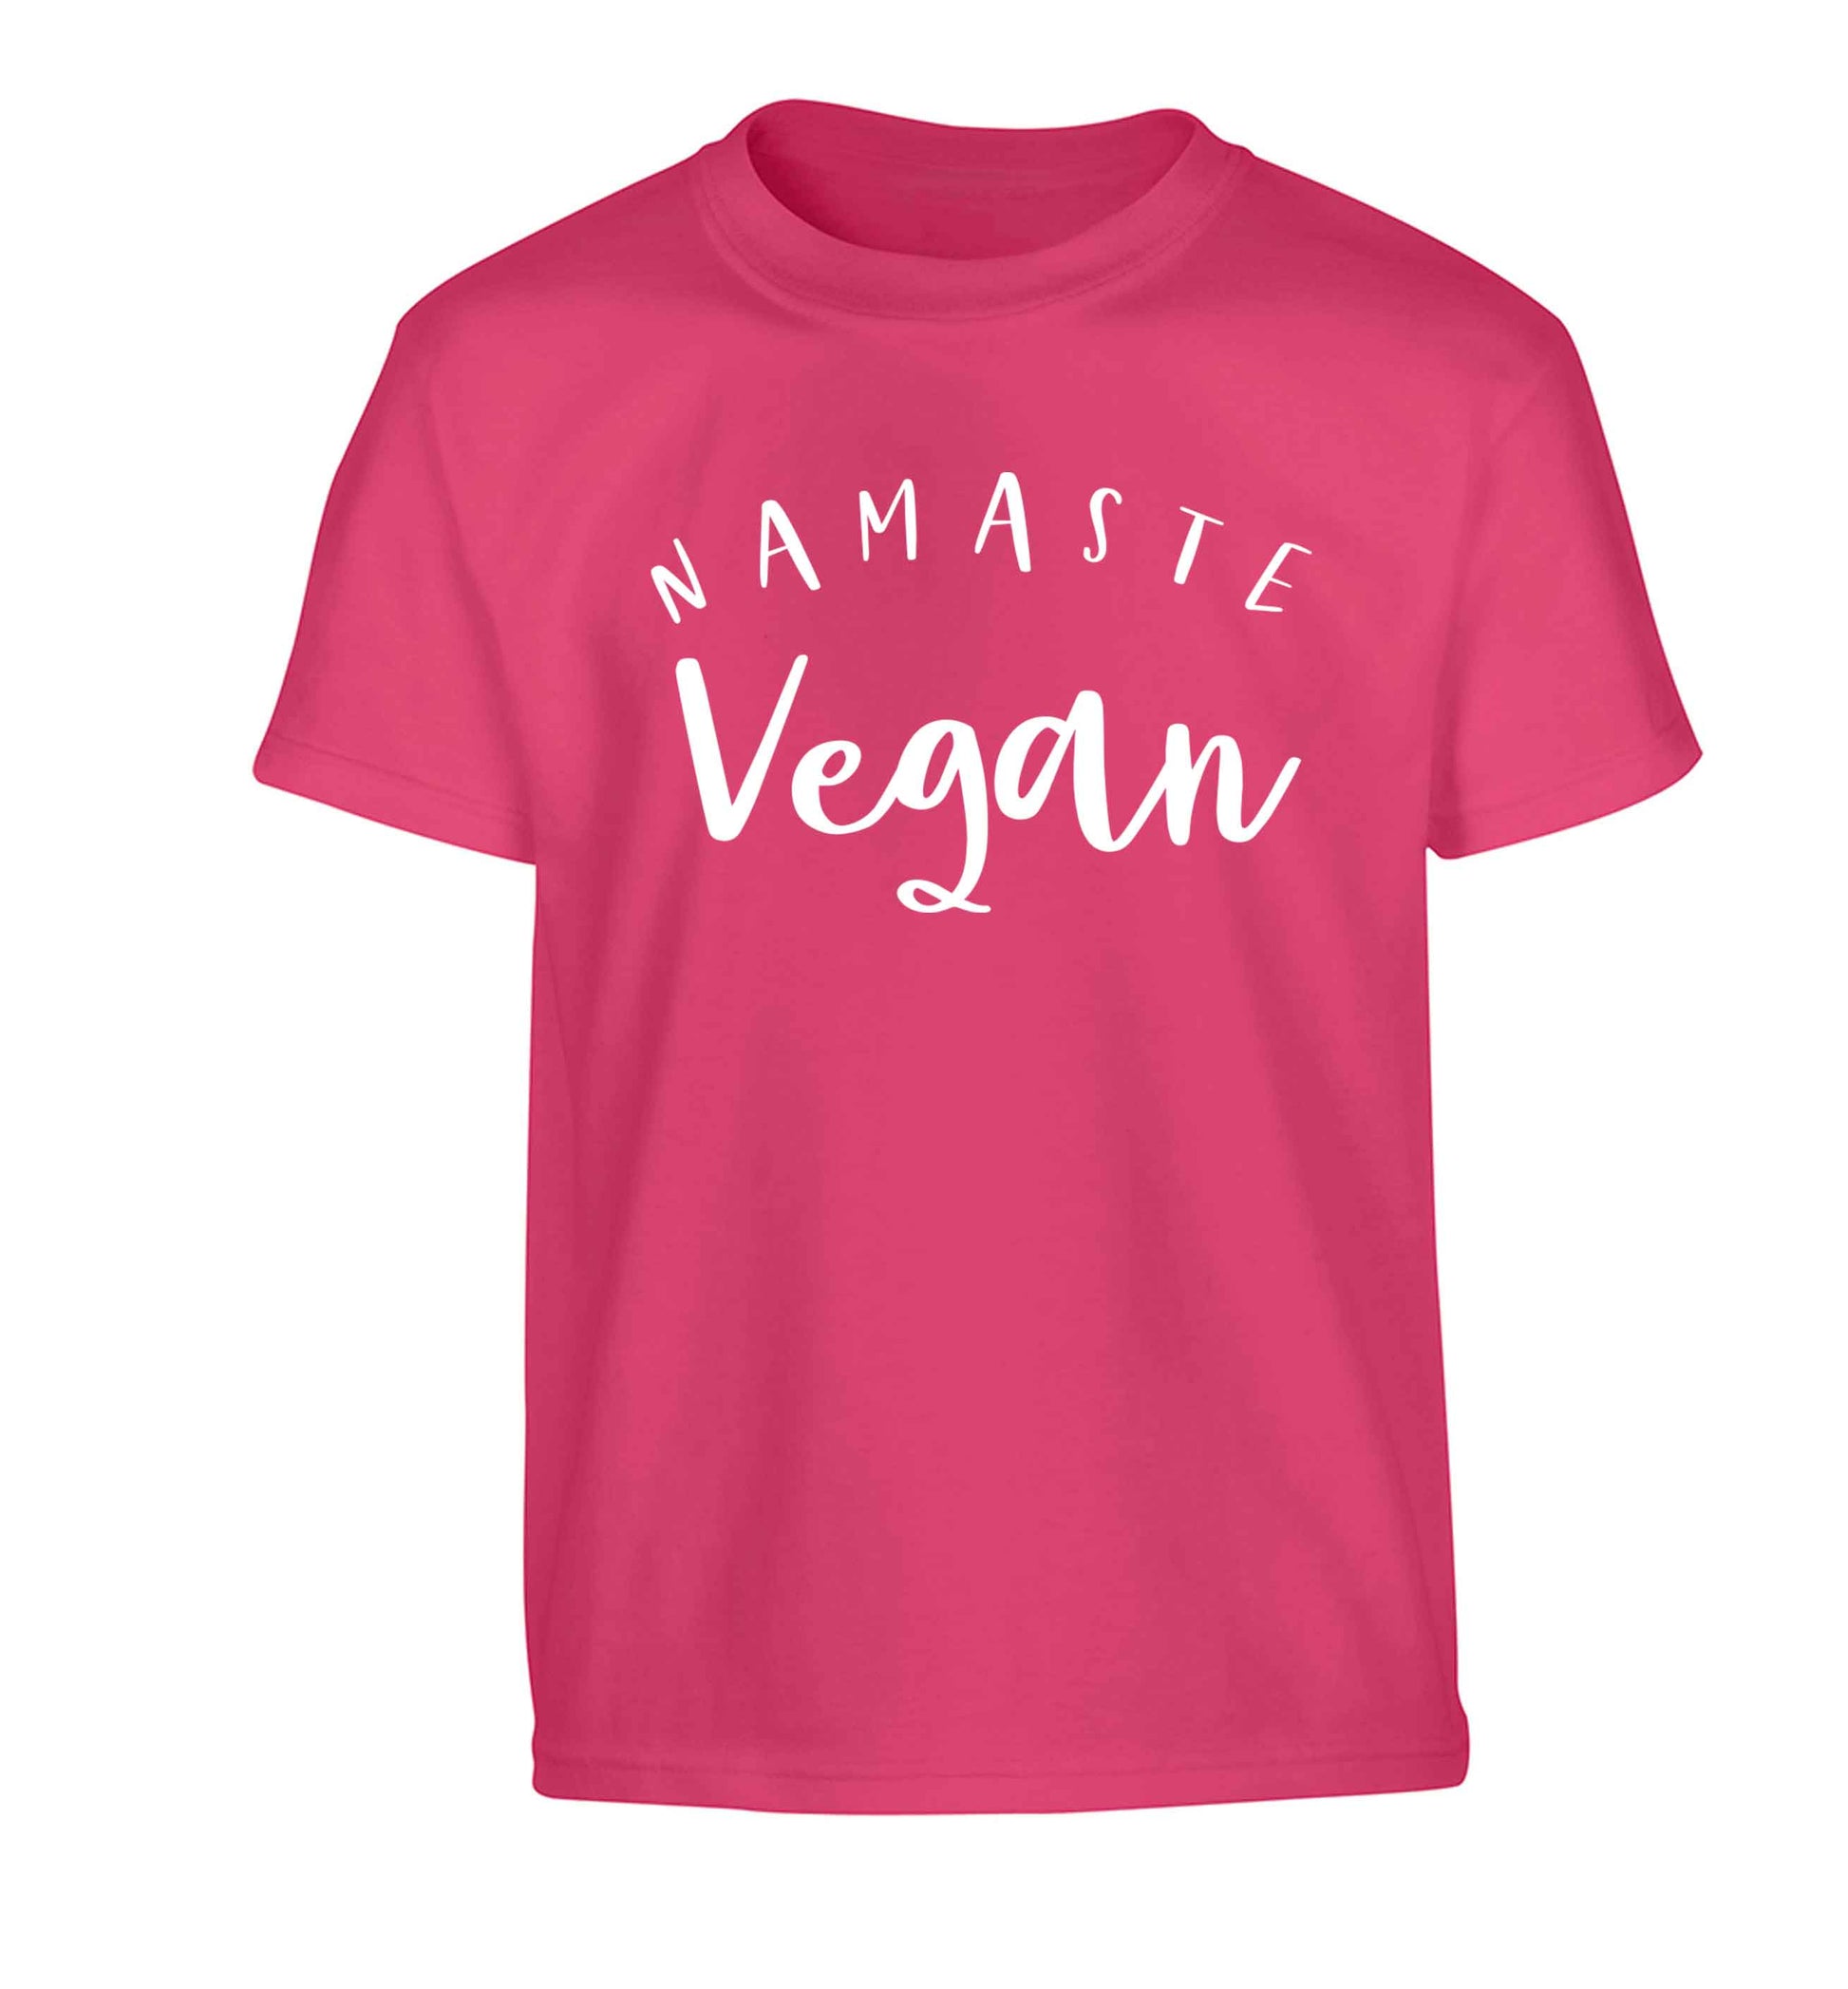 Namaste vegan Children's pink Tshirt 12-13 Years